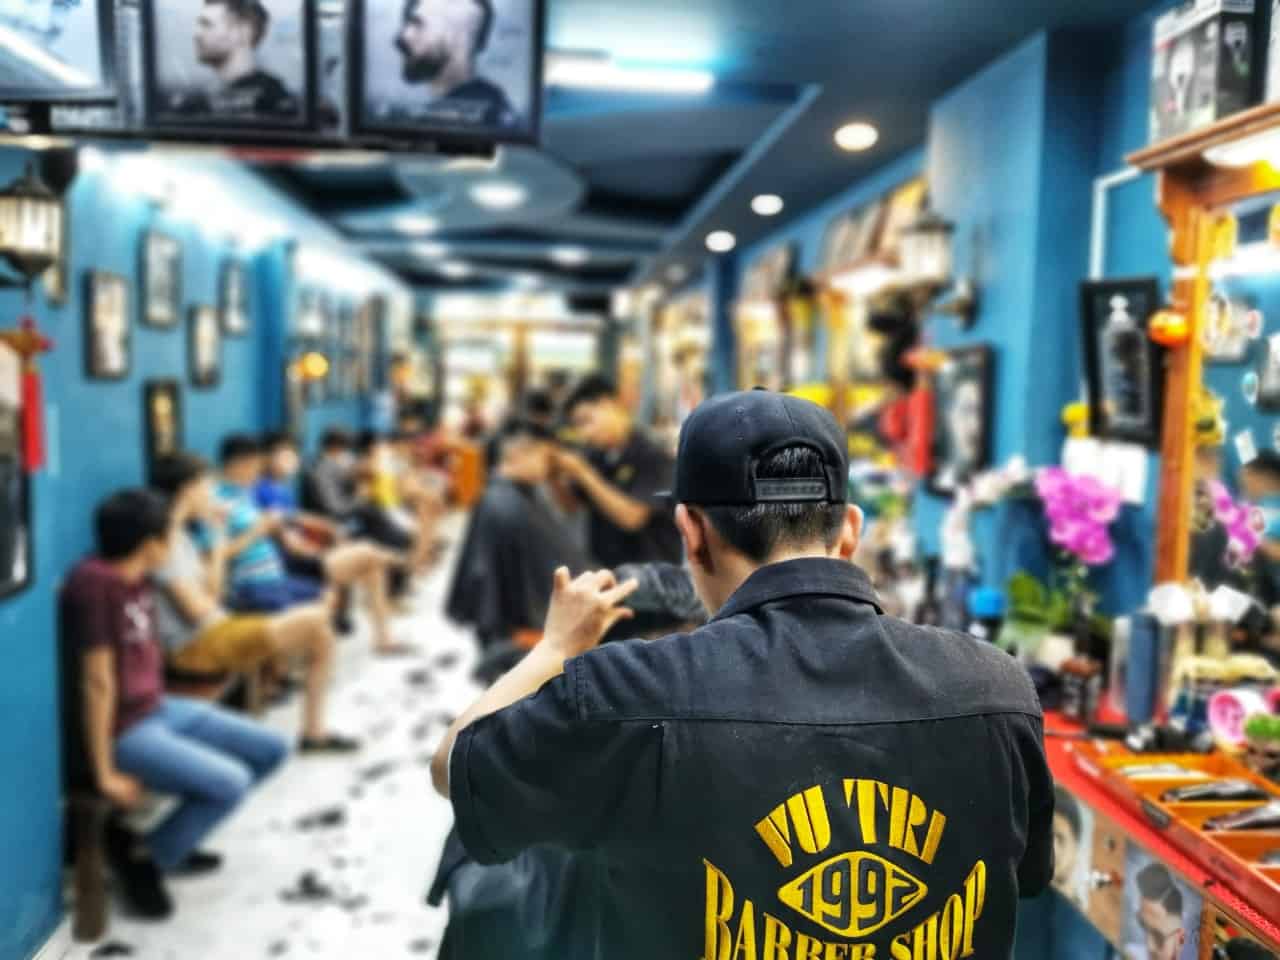 Bạn đang tìm kiếm một tiệm cắt tóc đẹp và chất lượng ở Sài Gòn? Tiệm cắt tóc nam đẹp ở Sài Gòn của chúng tôi sẽ không làm bạn thất vọng. Với các kiểu tóc hiện đại và nhân viên chuyên nghiệp, chúng tôi sẽ giúp bạn trở nên phong cách và tự tin.